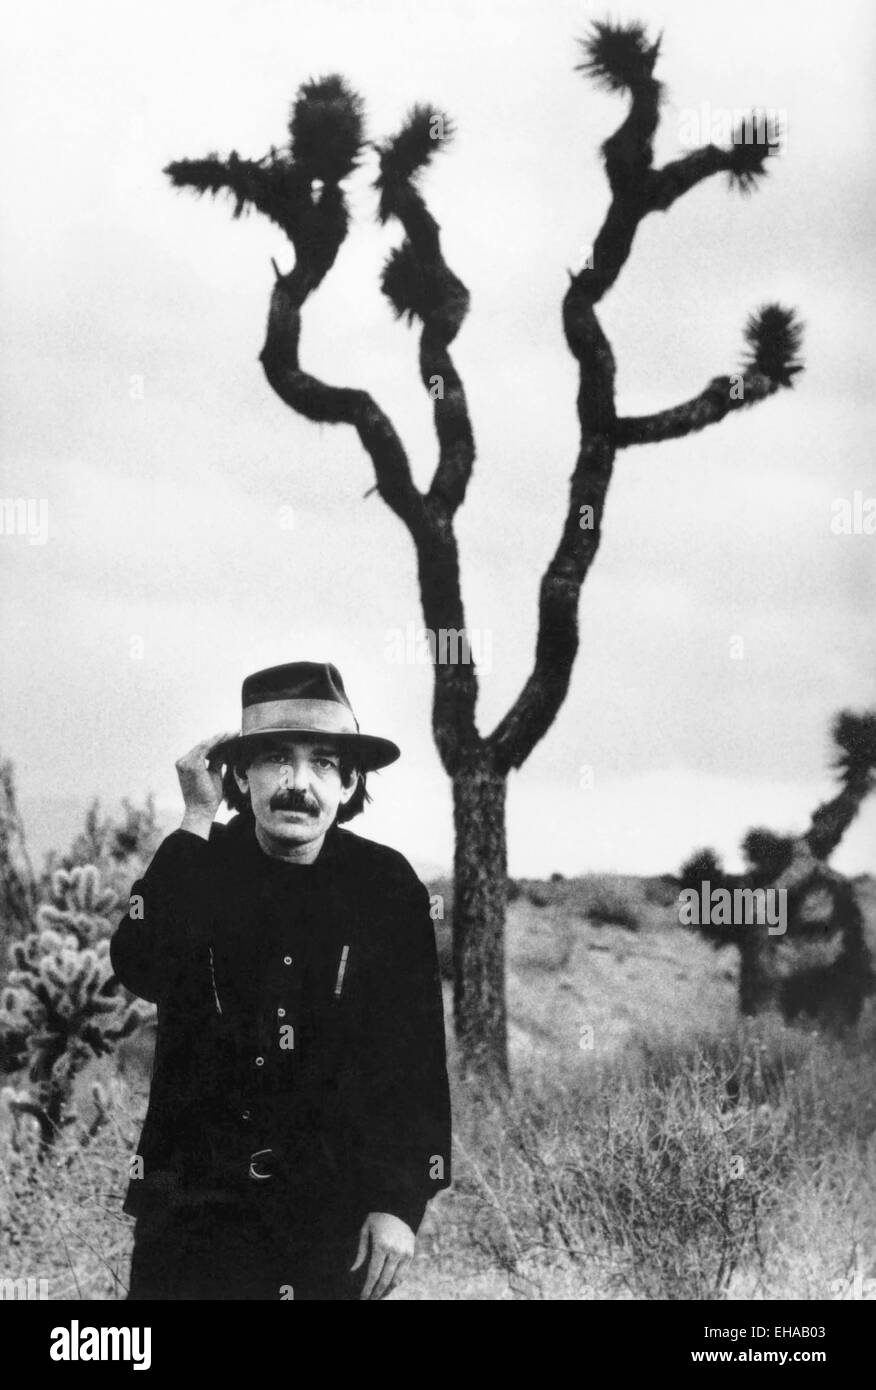 Don Van Vliet oder Captain Beefheart, Porträt in der Wüste, etwa Anfang der 80er Jahre Stockfoto